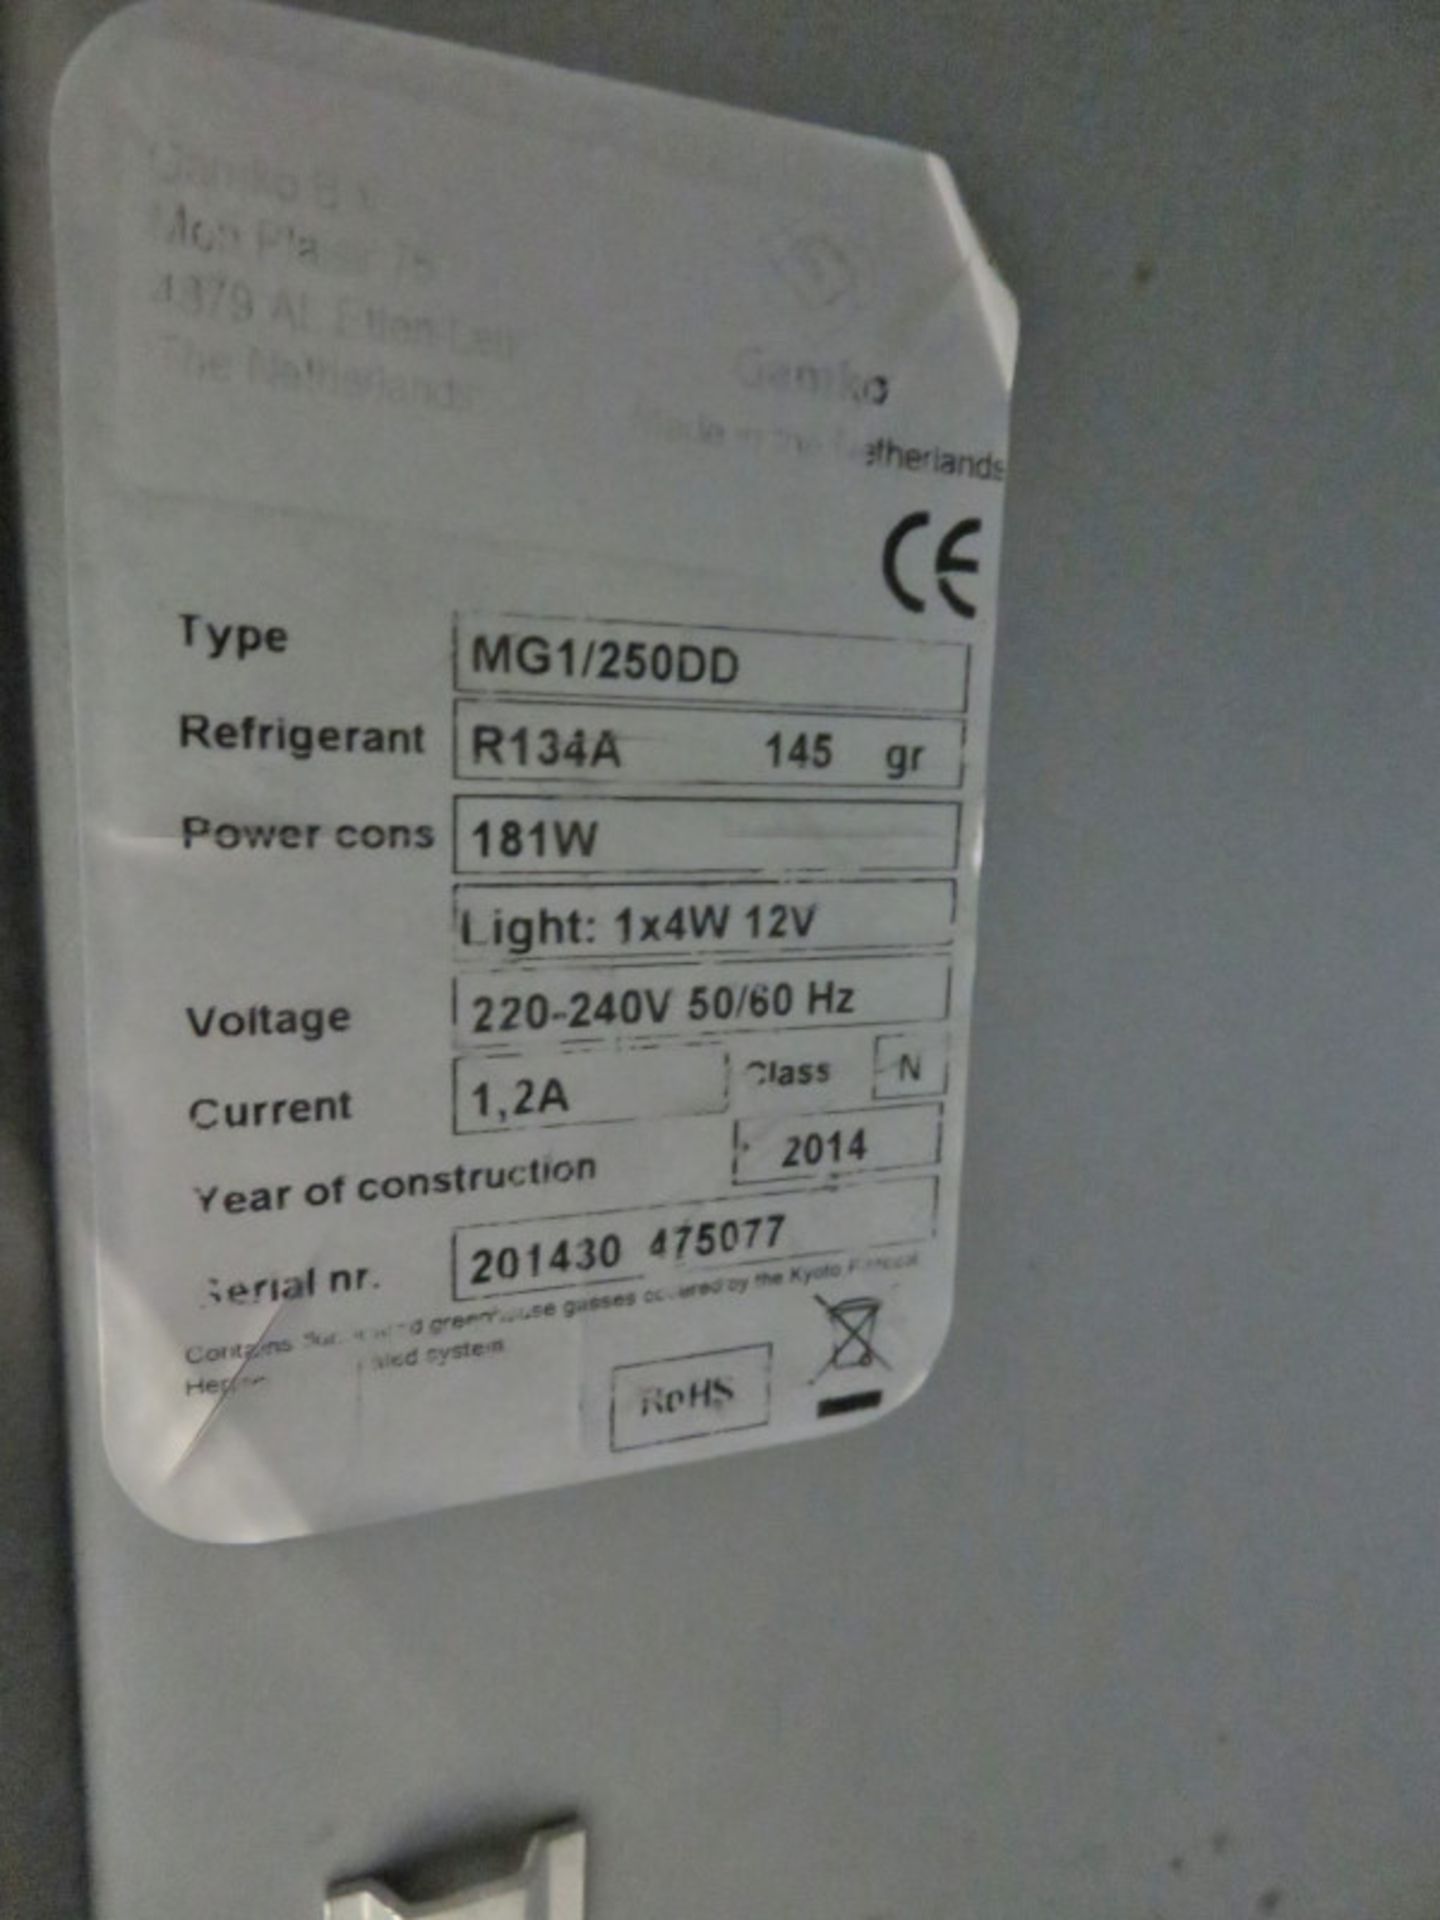 Double door fridge unit - 900mm x 520mm x 900mm - Image 3 of 3